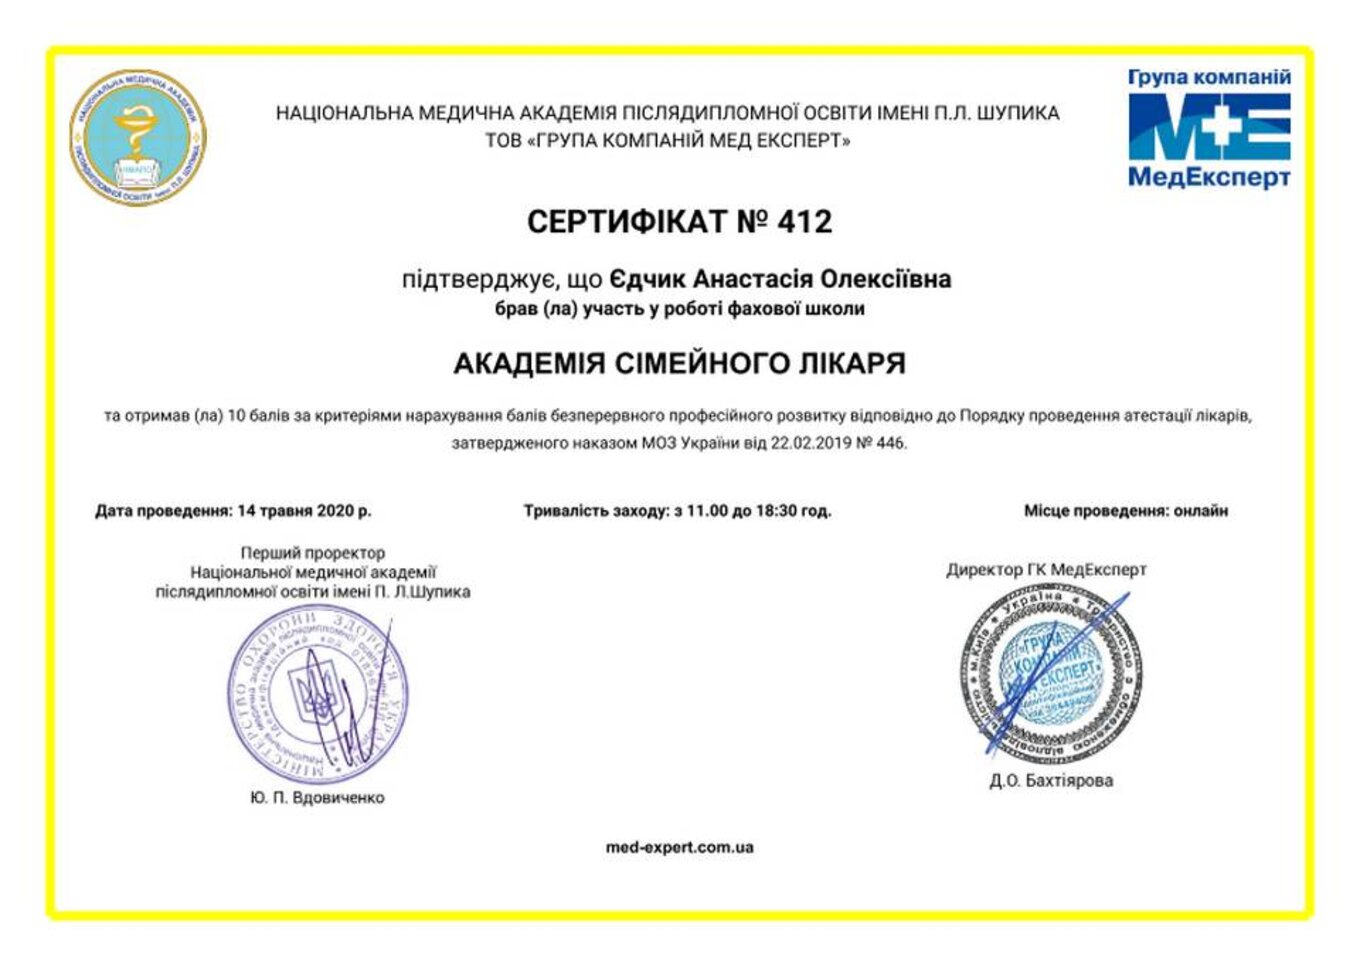 certificates/yedchik-anastasiya-oleksiyivna/erc-edchik-cert-75.jpg